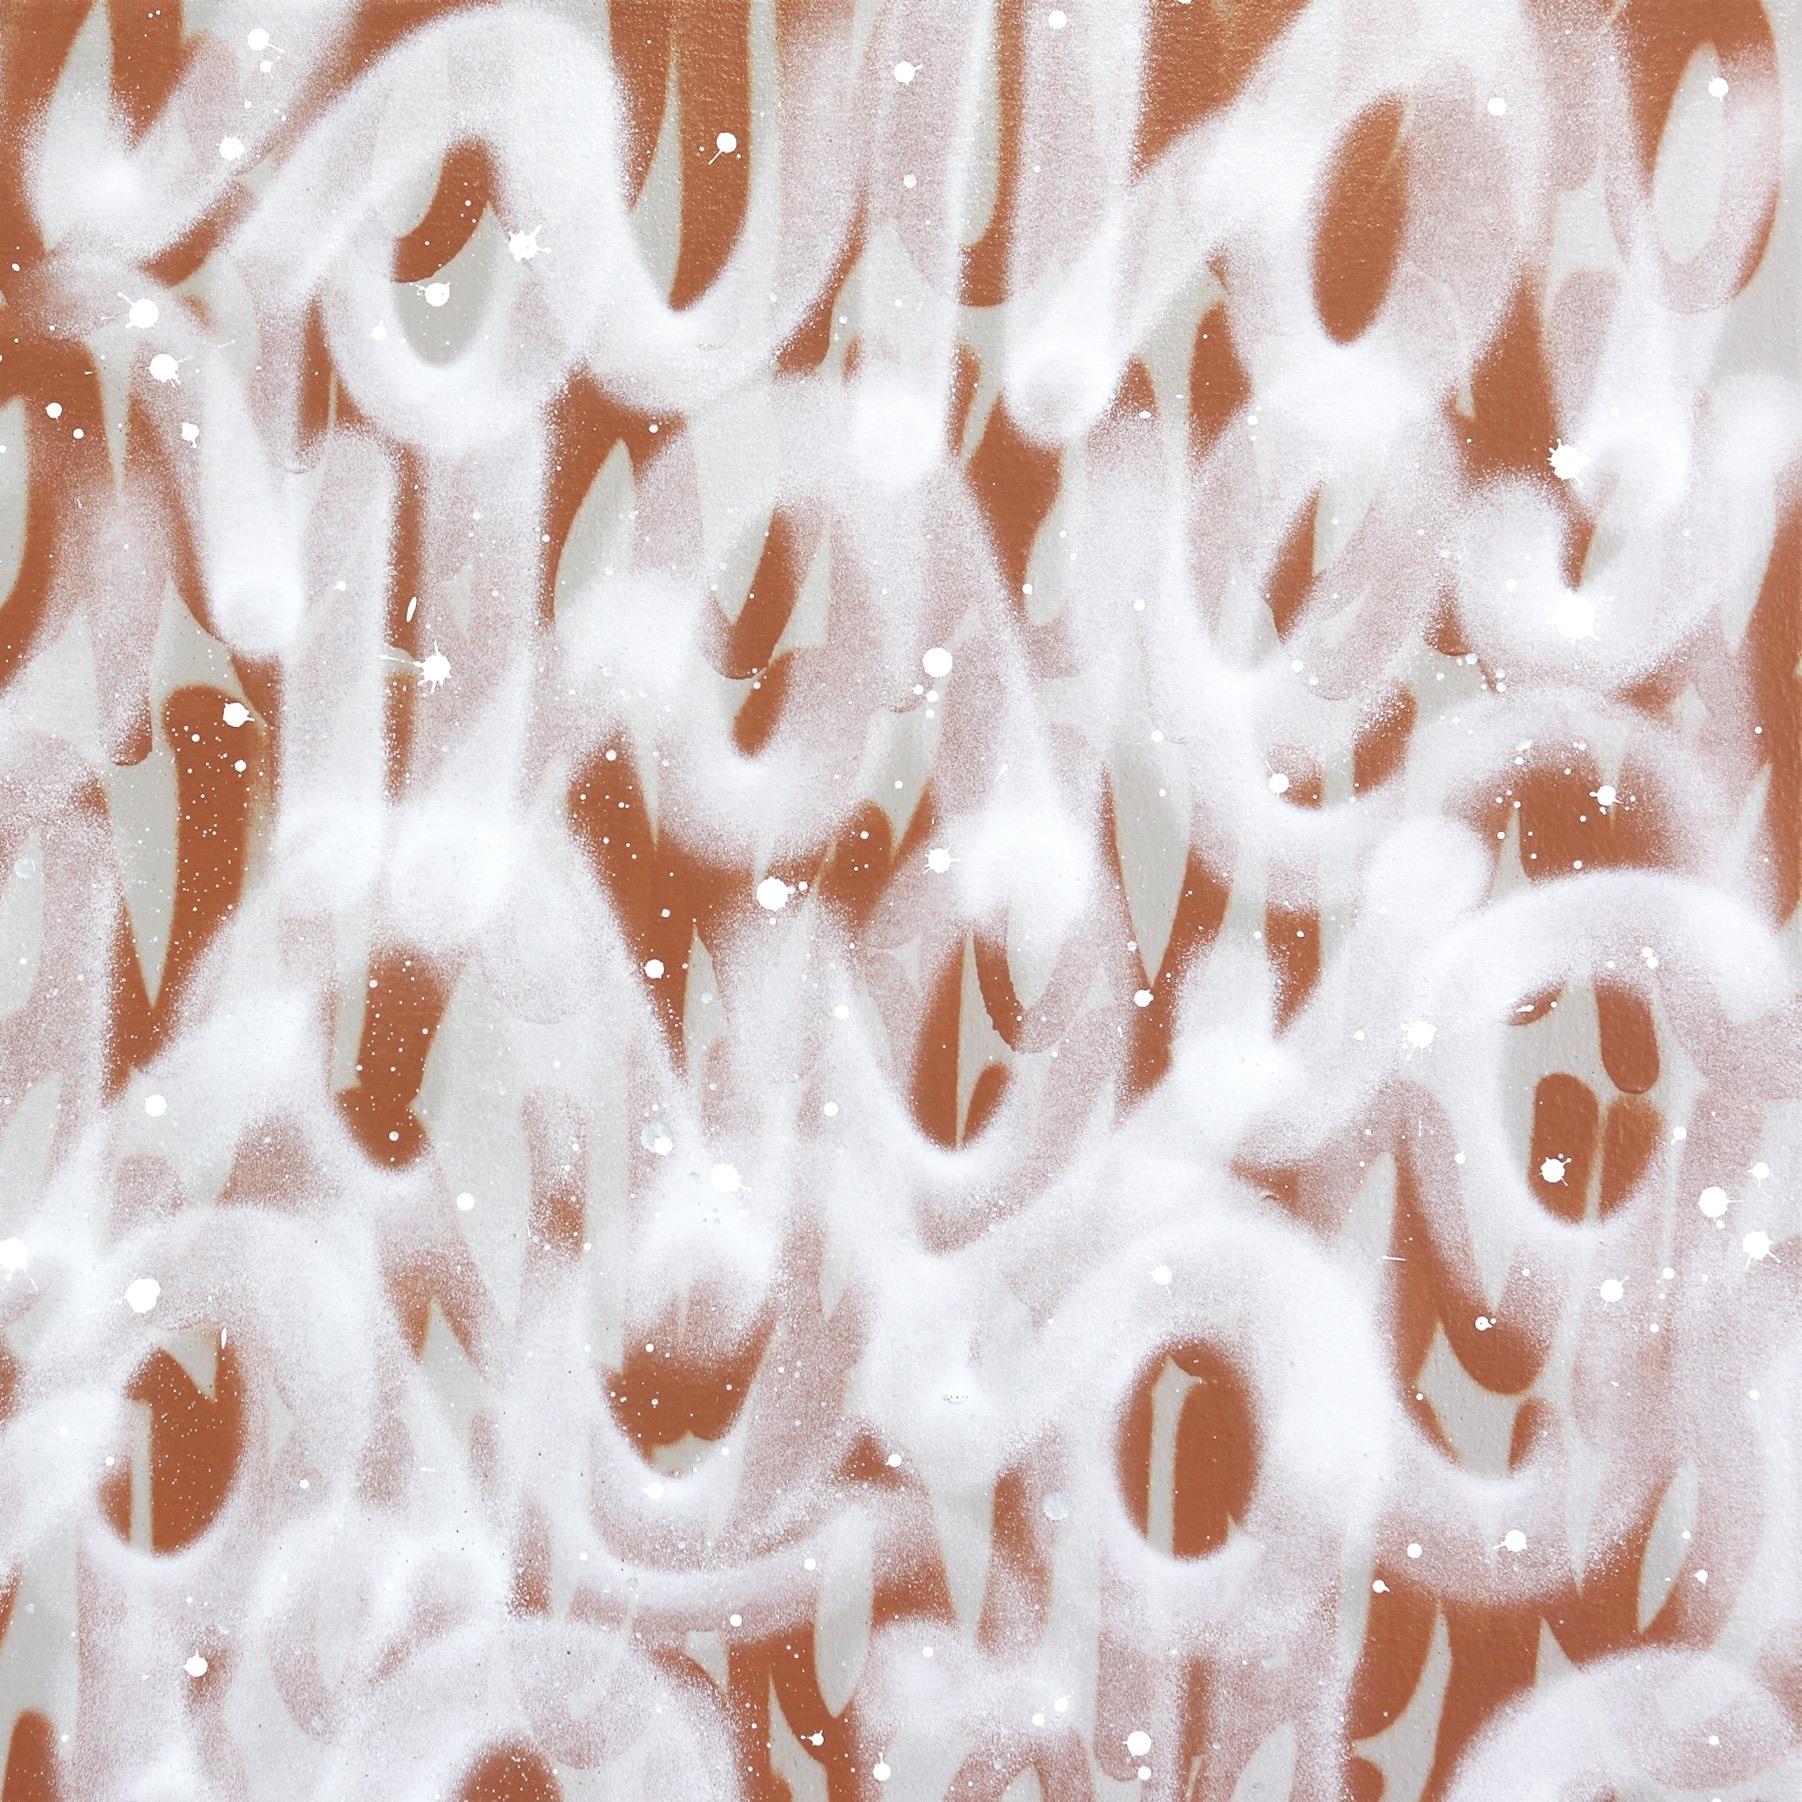 Die Künstlerin Amber Goldhammer aus Los Angeles malt dramatische abstrakte Kompositionen in Acryl auf Leinwand mit energischen Pinselstrichen. In ihren zeitgenössischen Gemälden drückt Goldhammer Emotionen aus, die einer stillen Poesie ähneln, und